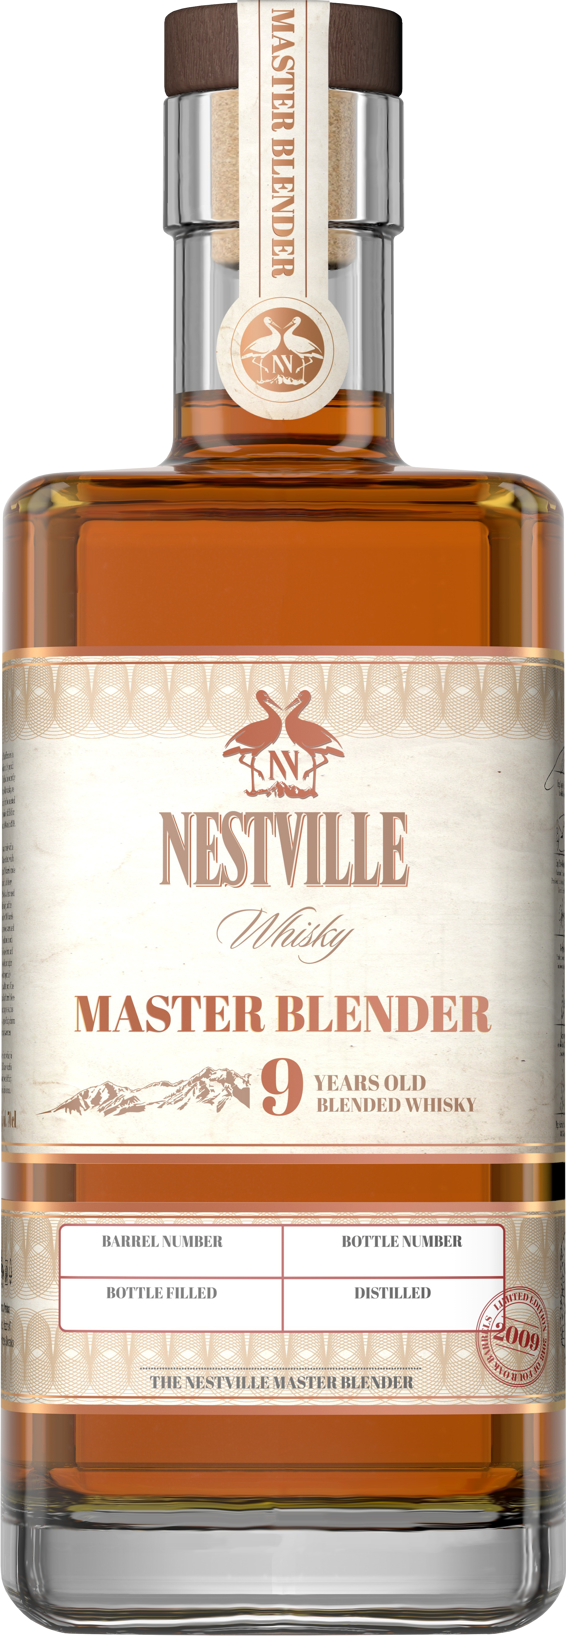 100 מ"ל  Nestville Master Blender 9